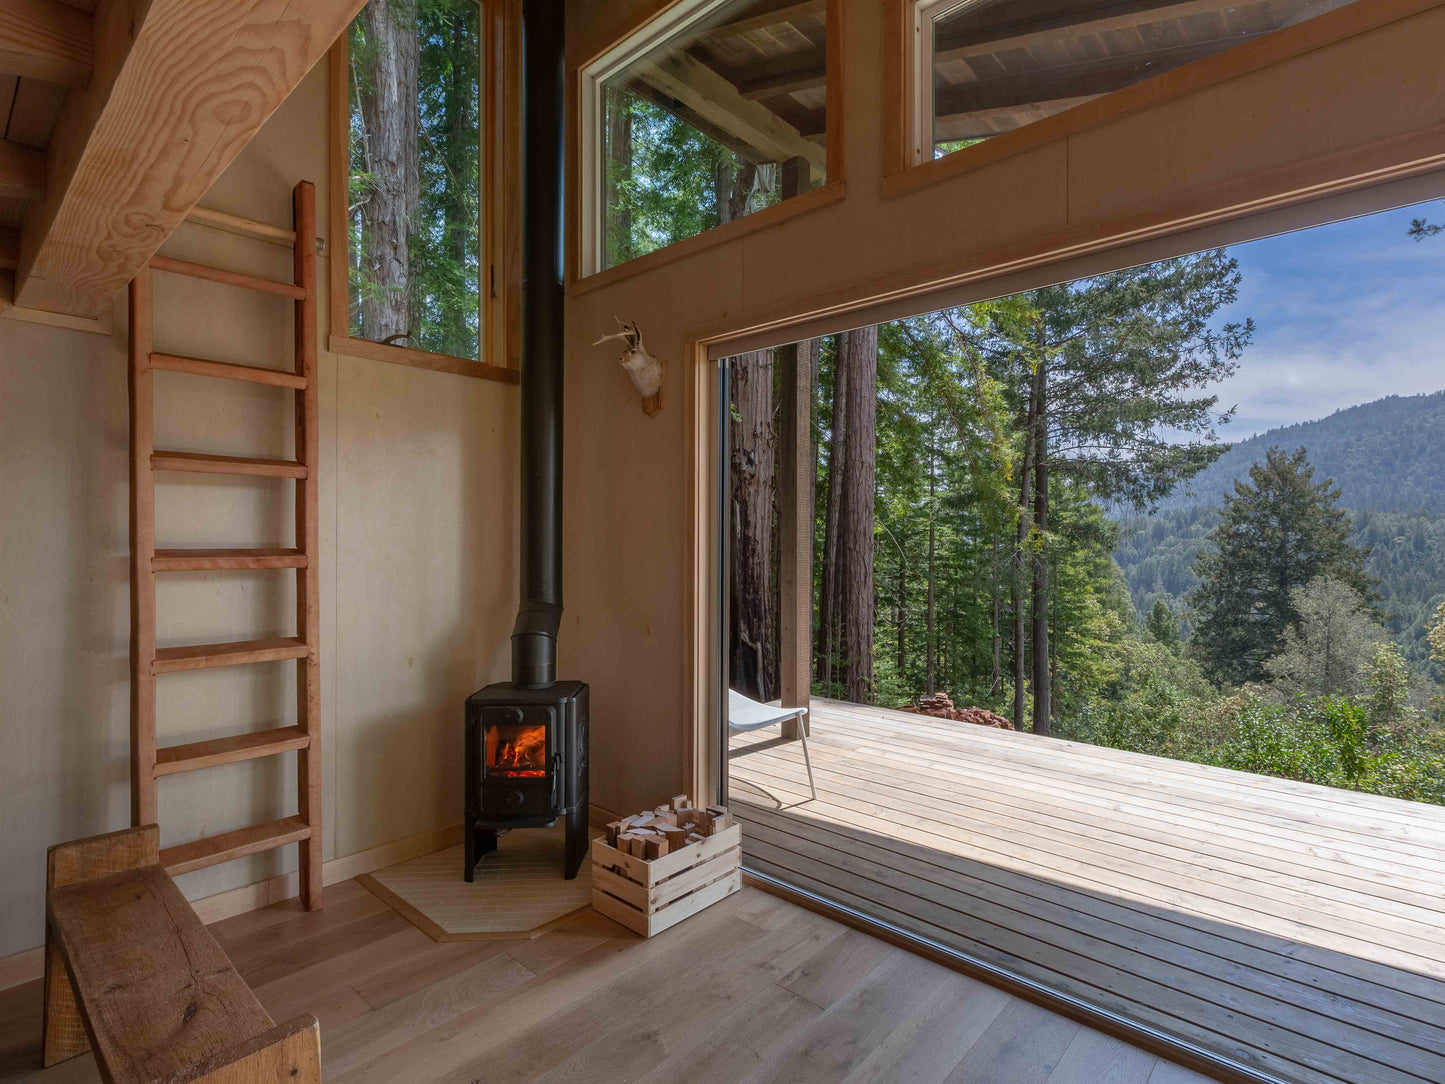 Redwood Cabin Plans